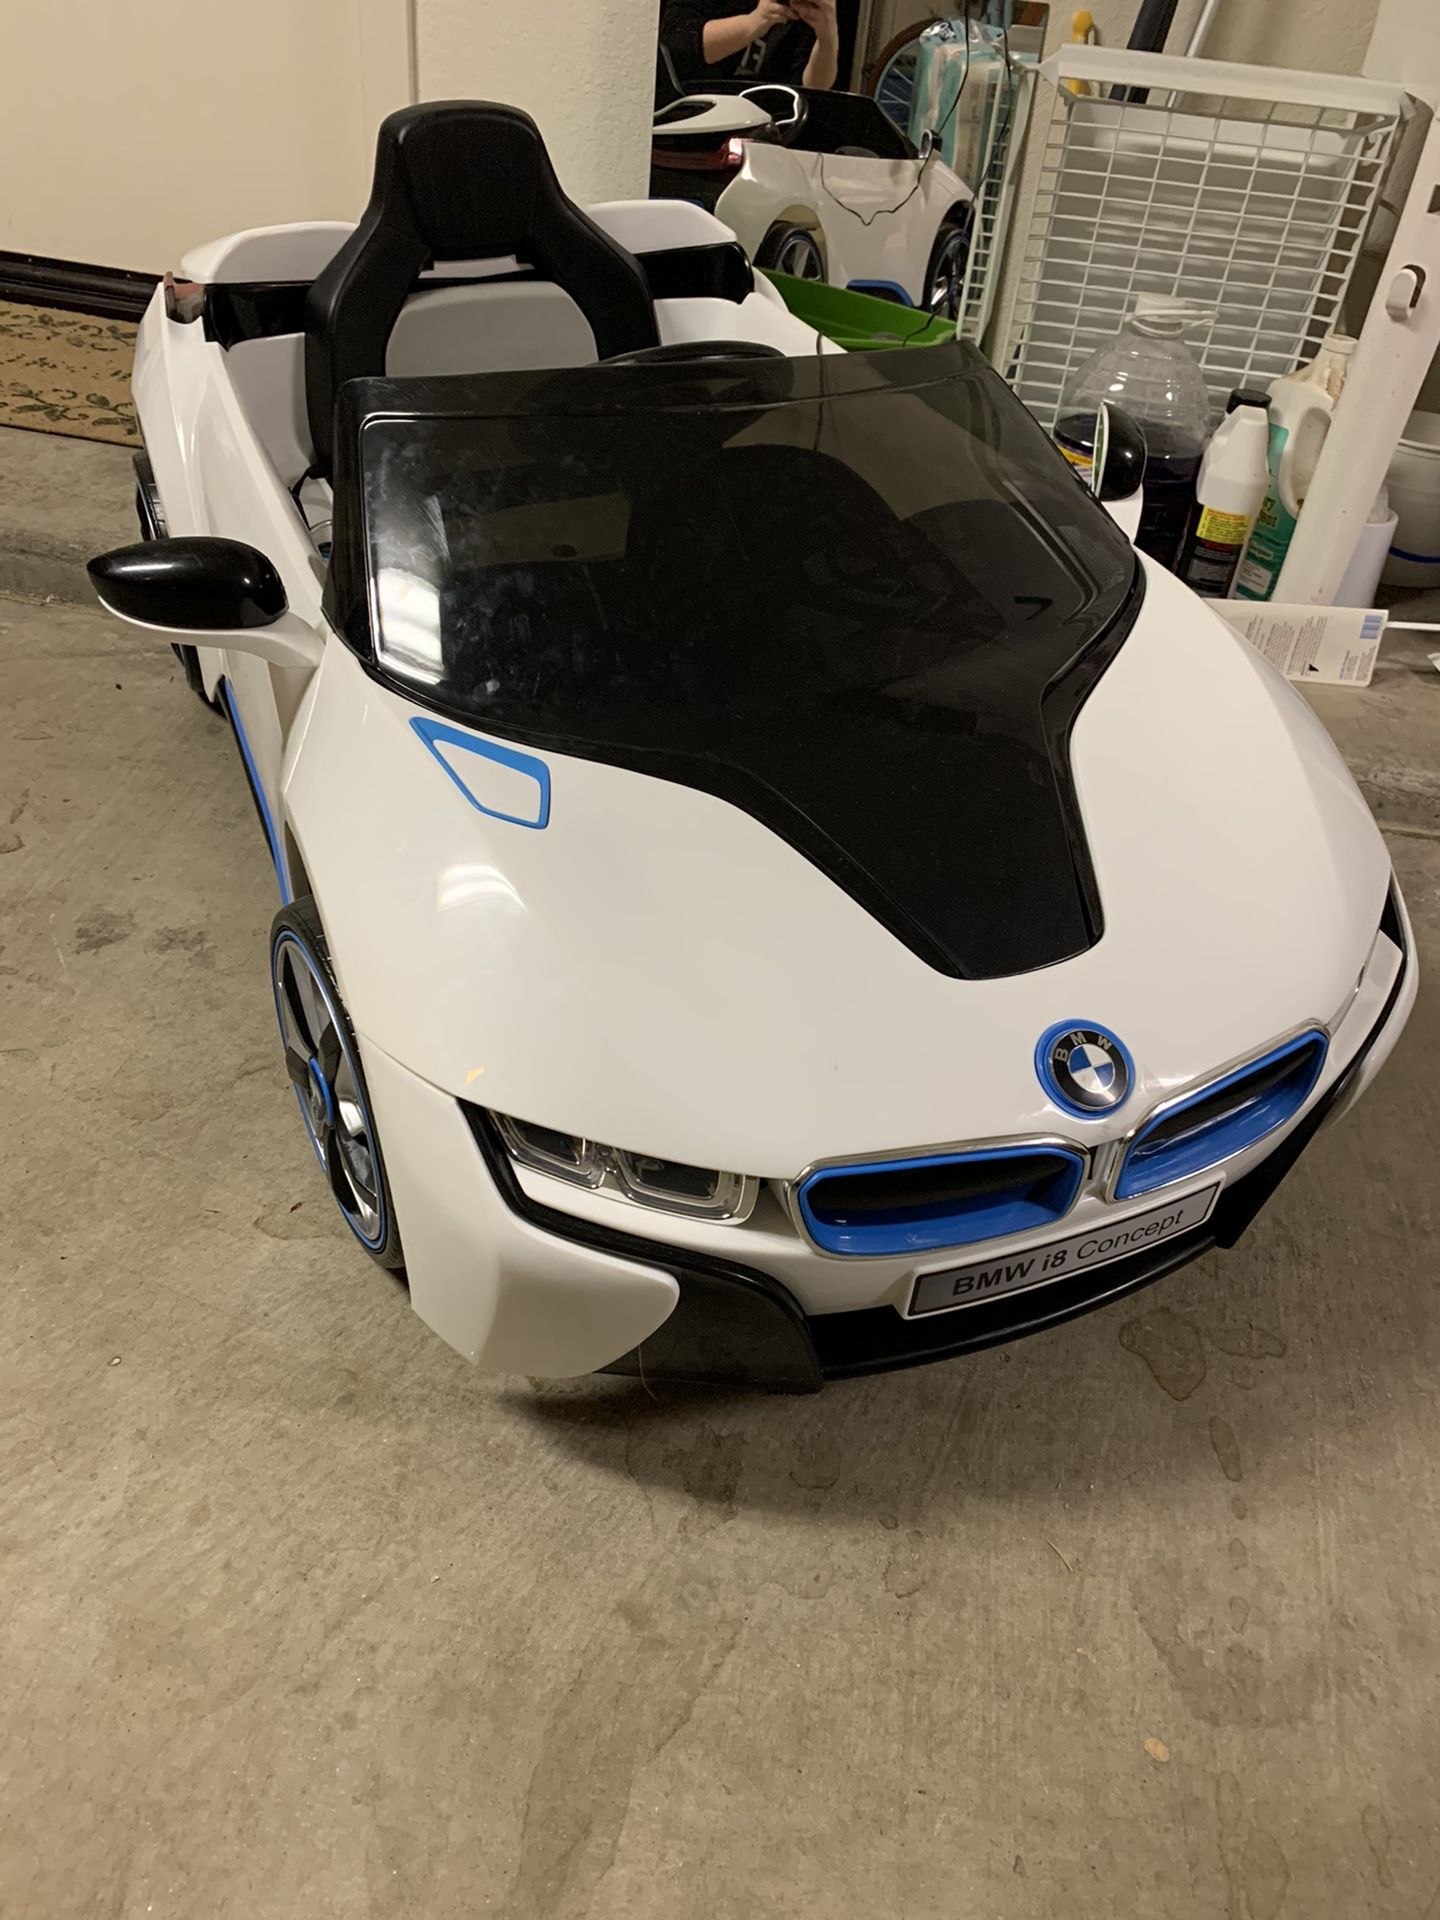 BMW motorized car- brand new